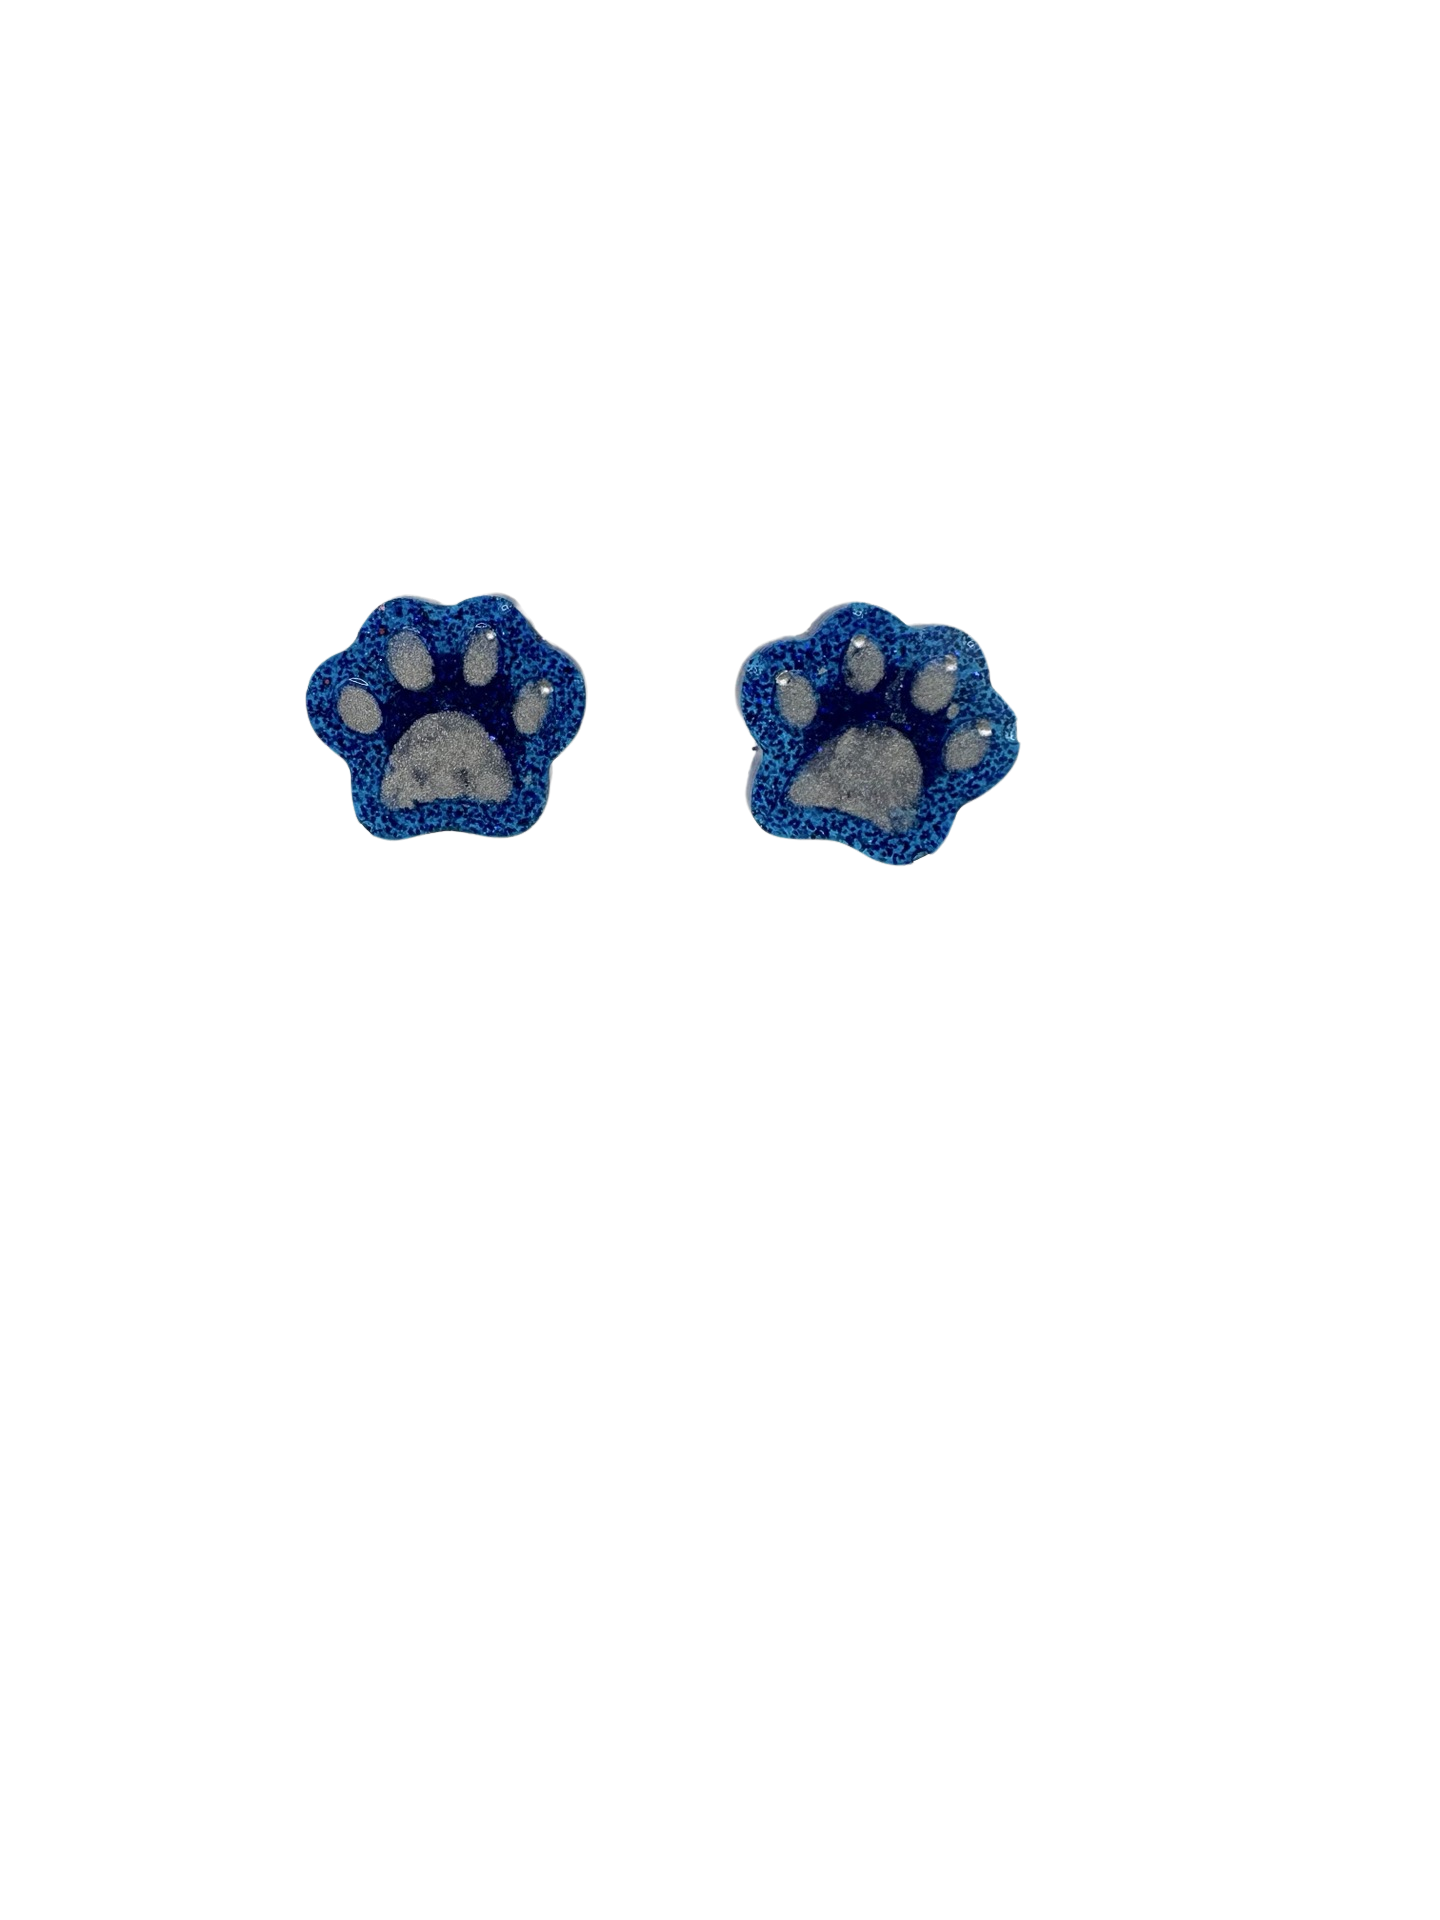 Blue & Silver Paw Print Earrings